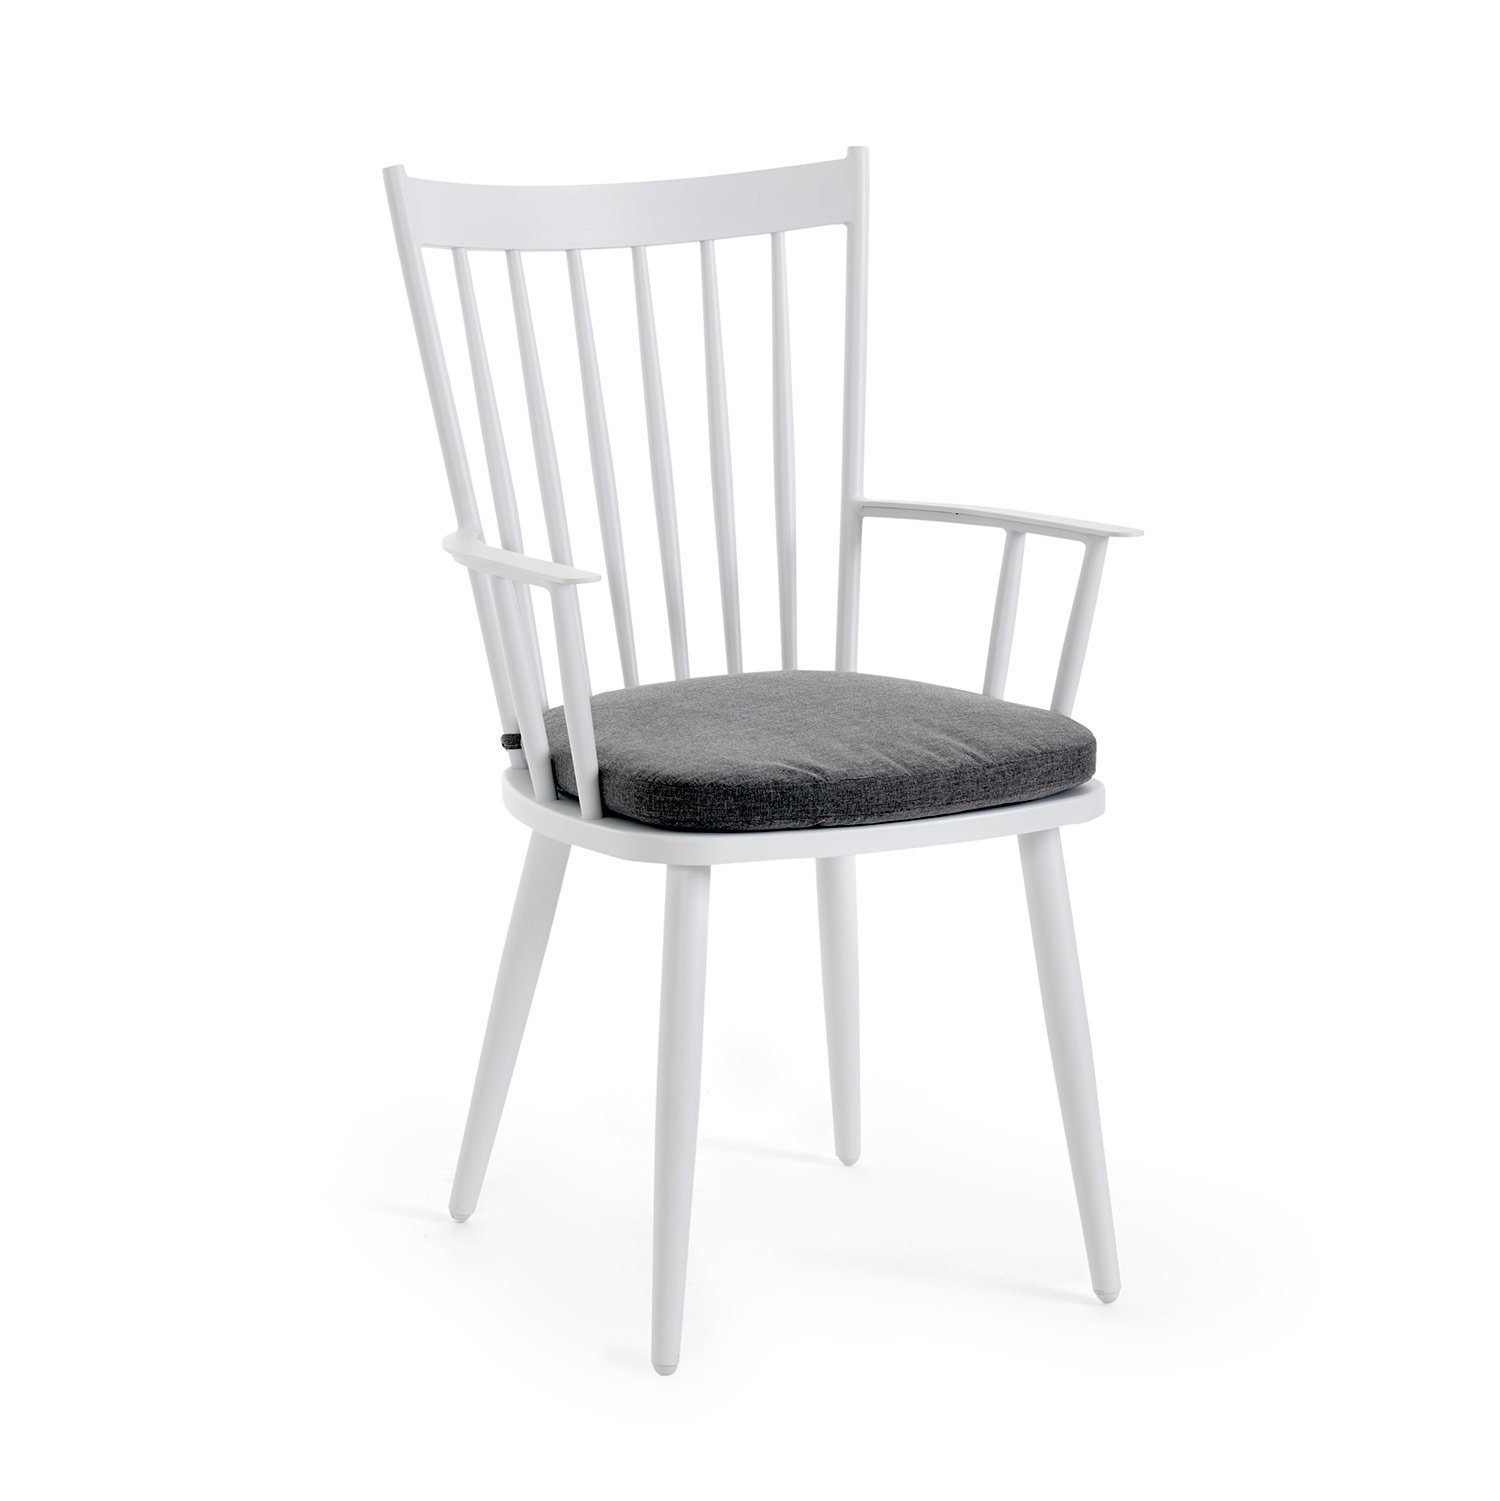 Alvena karmstol i vit aluminium med grå dyna från Brafab.